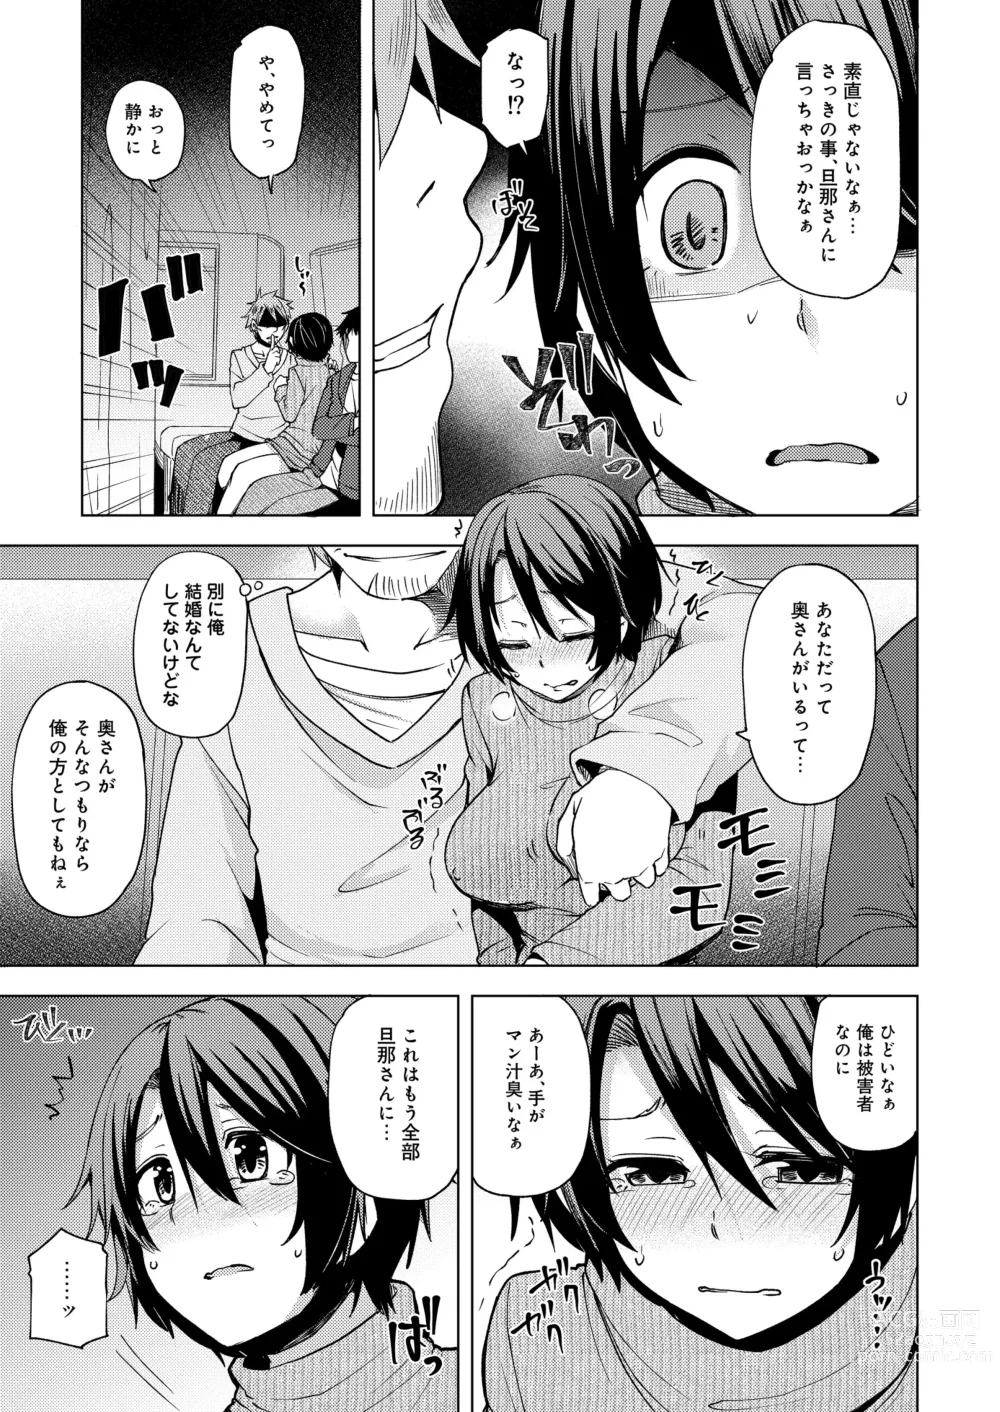 Page 11 of doujinshi 夜行バスで痴漢され寝取られた妻